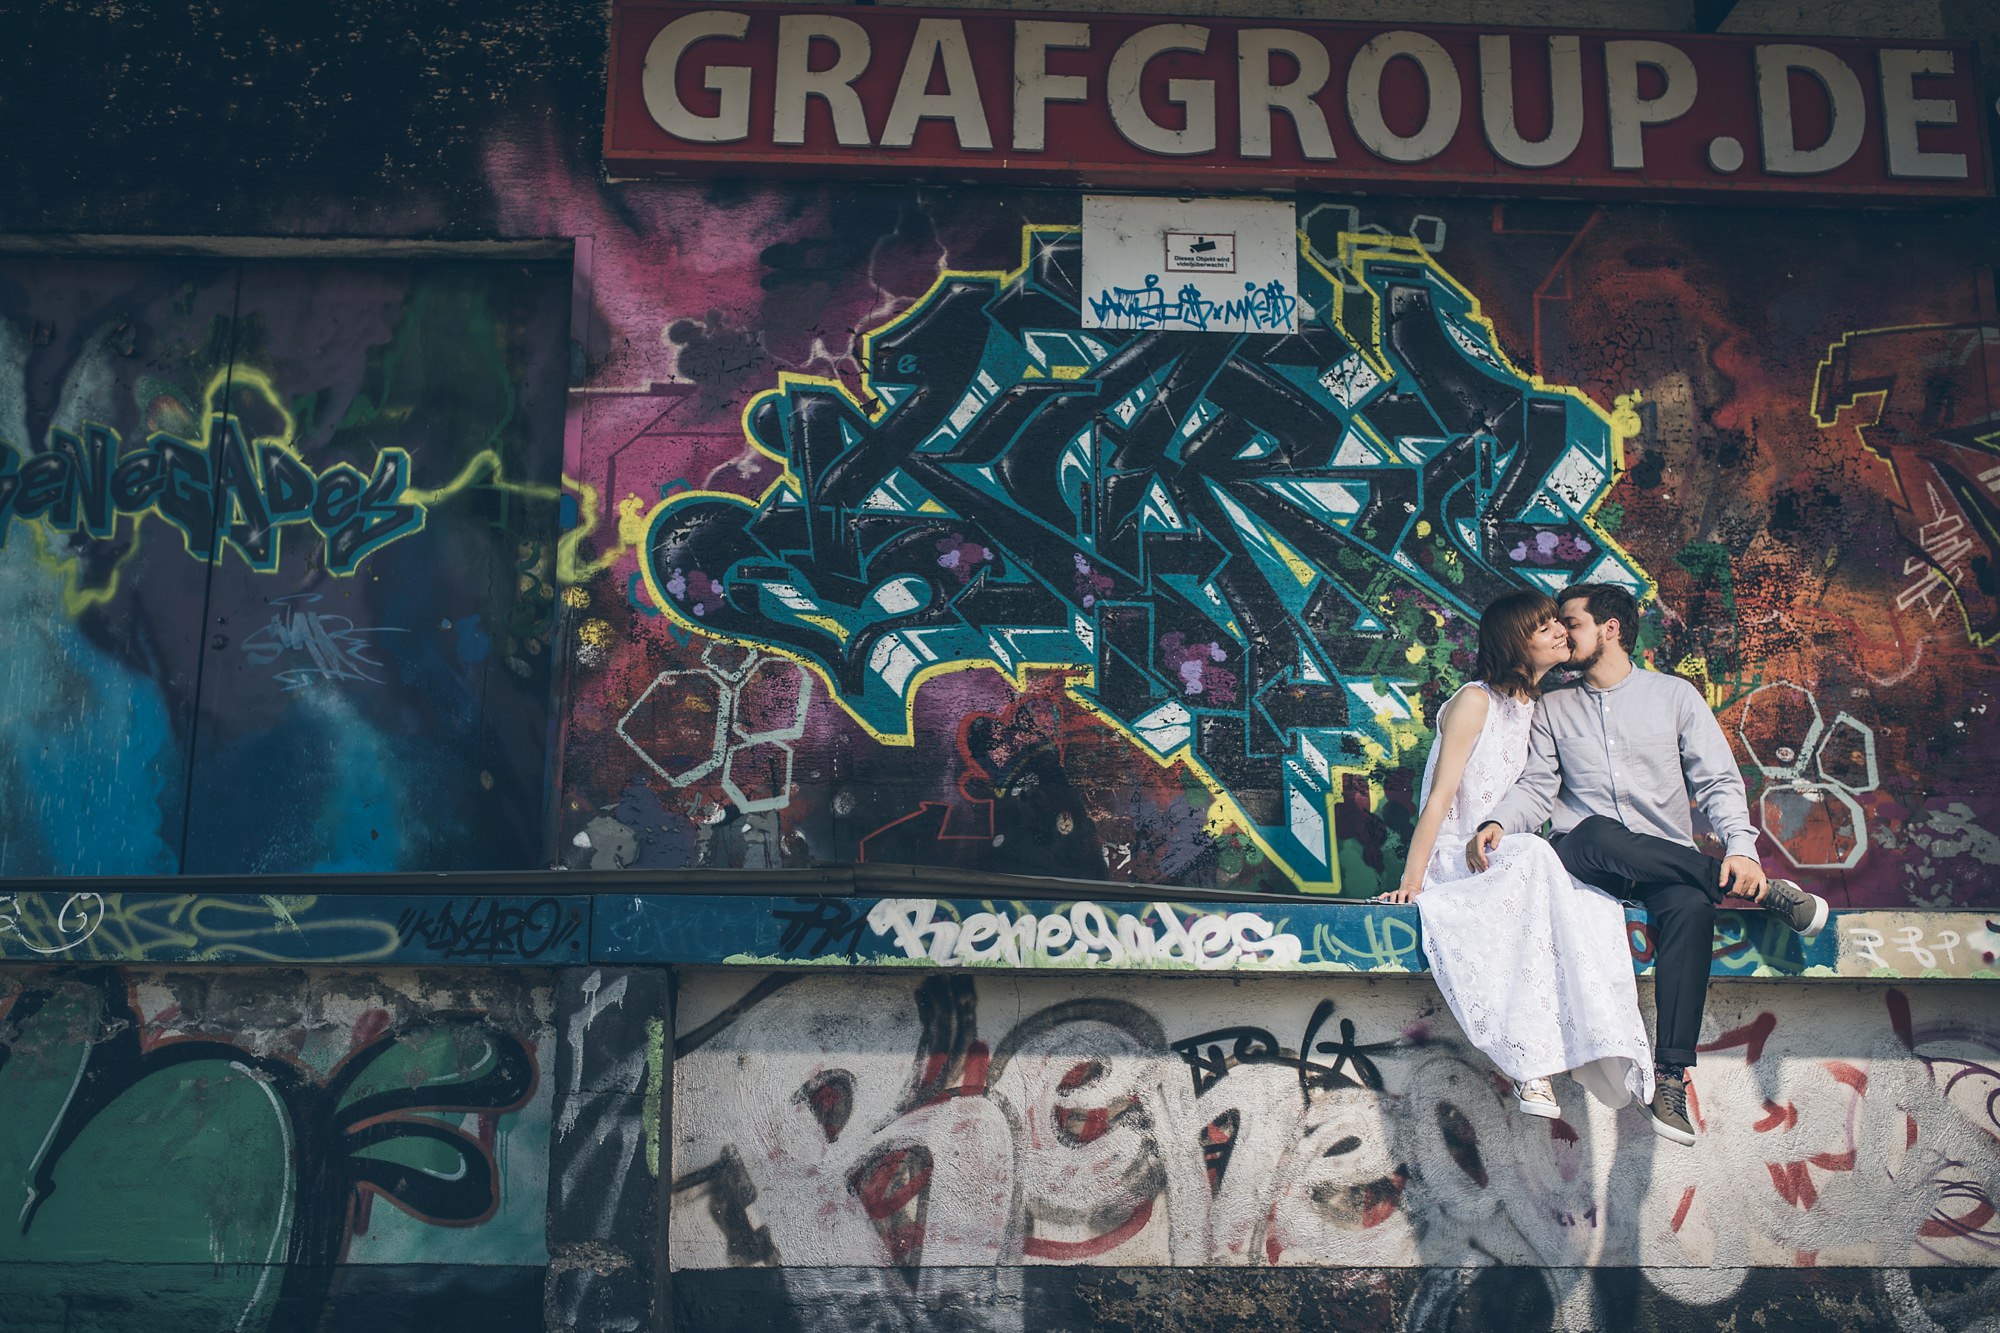 Braut und Bräutigam flirten vor großem Graffiti auf Laderampe im Jungbusch Mannheim.